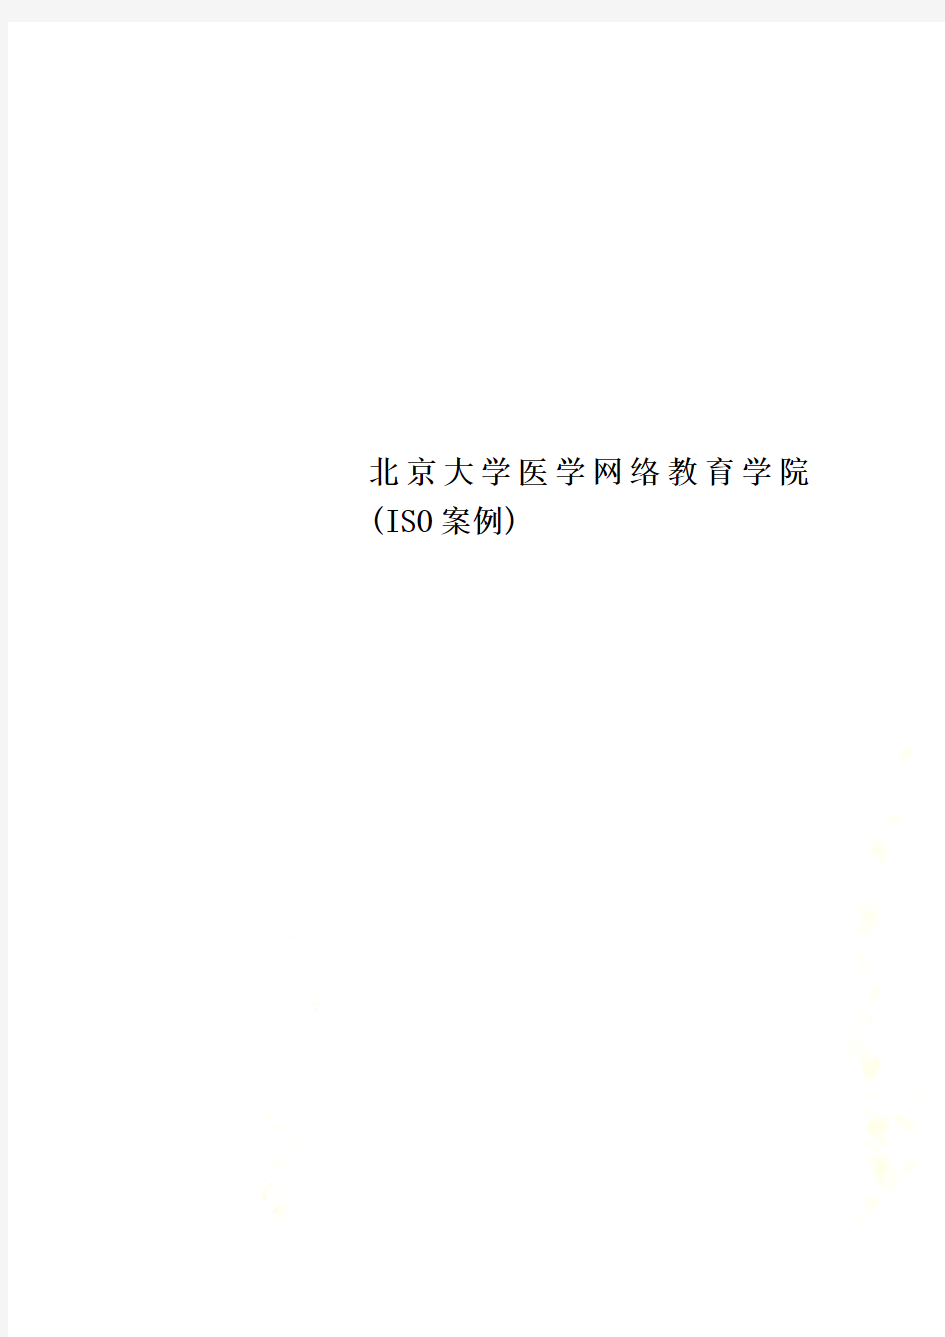 北京大学医学网络教育学院(ISO案例)